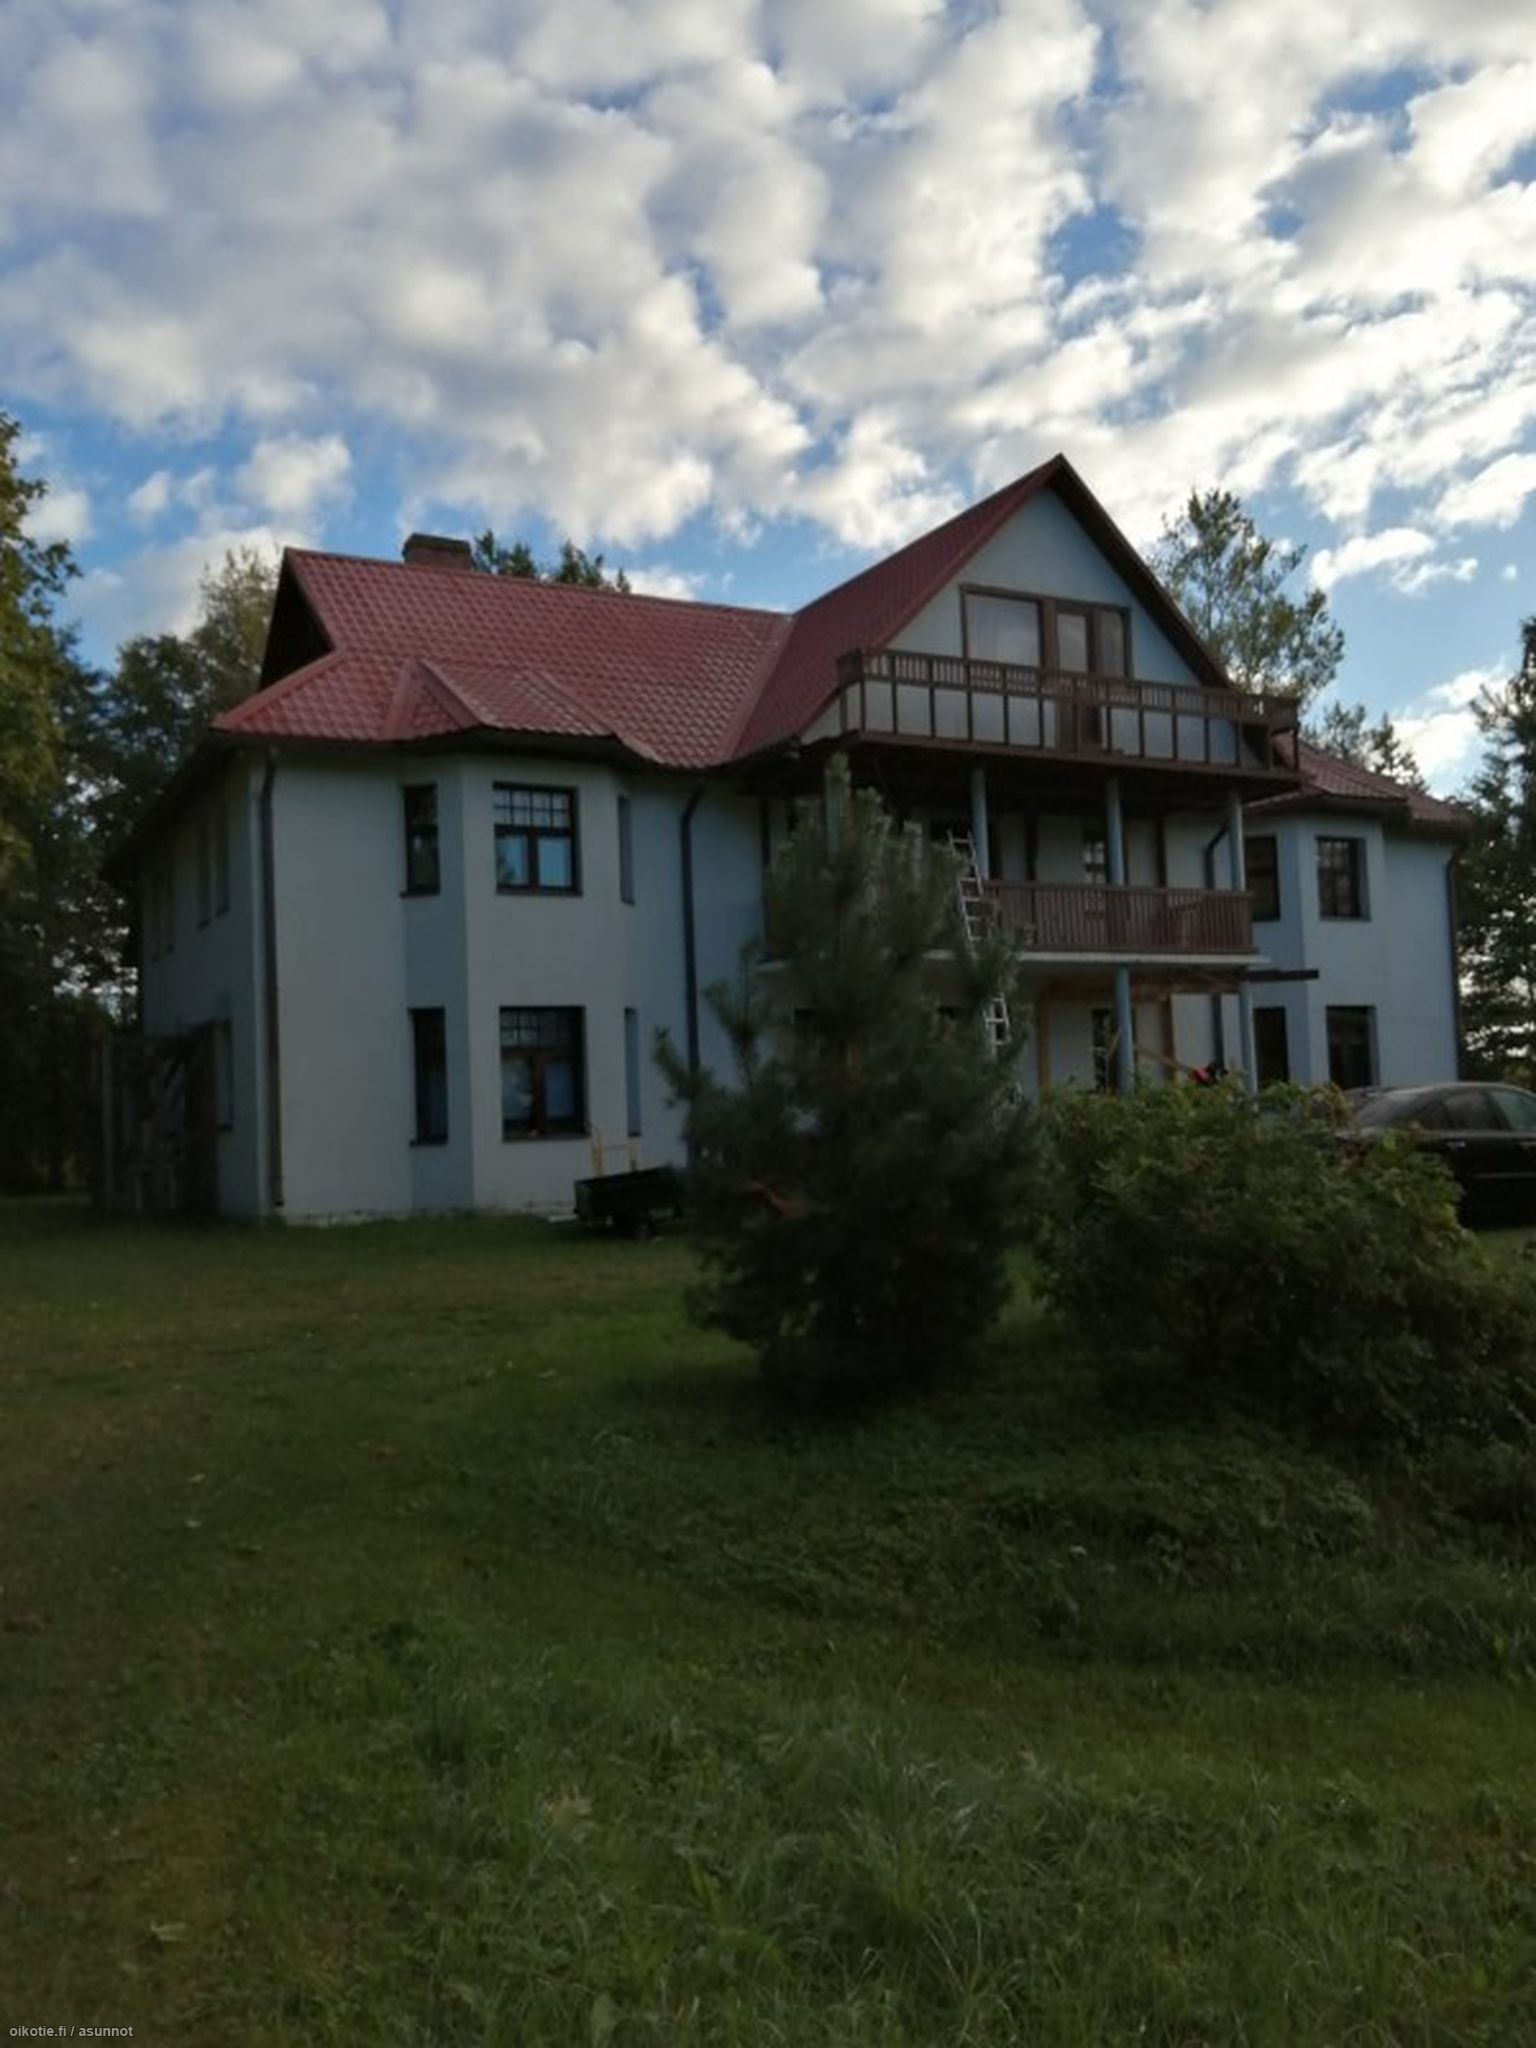 430 m² Kiviranna, Tahkuranna, Viro, 00000 Pärnumaa Omakotitalo 9h myynnissä  - Oikotie 17128400